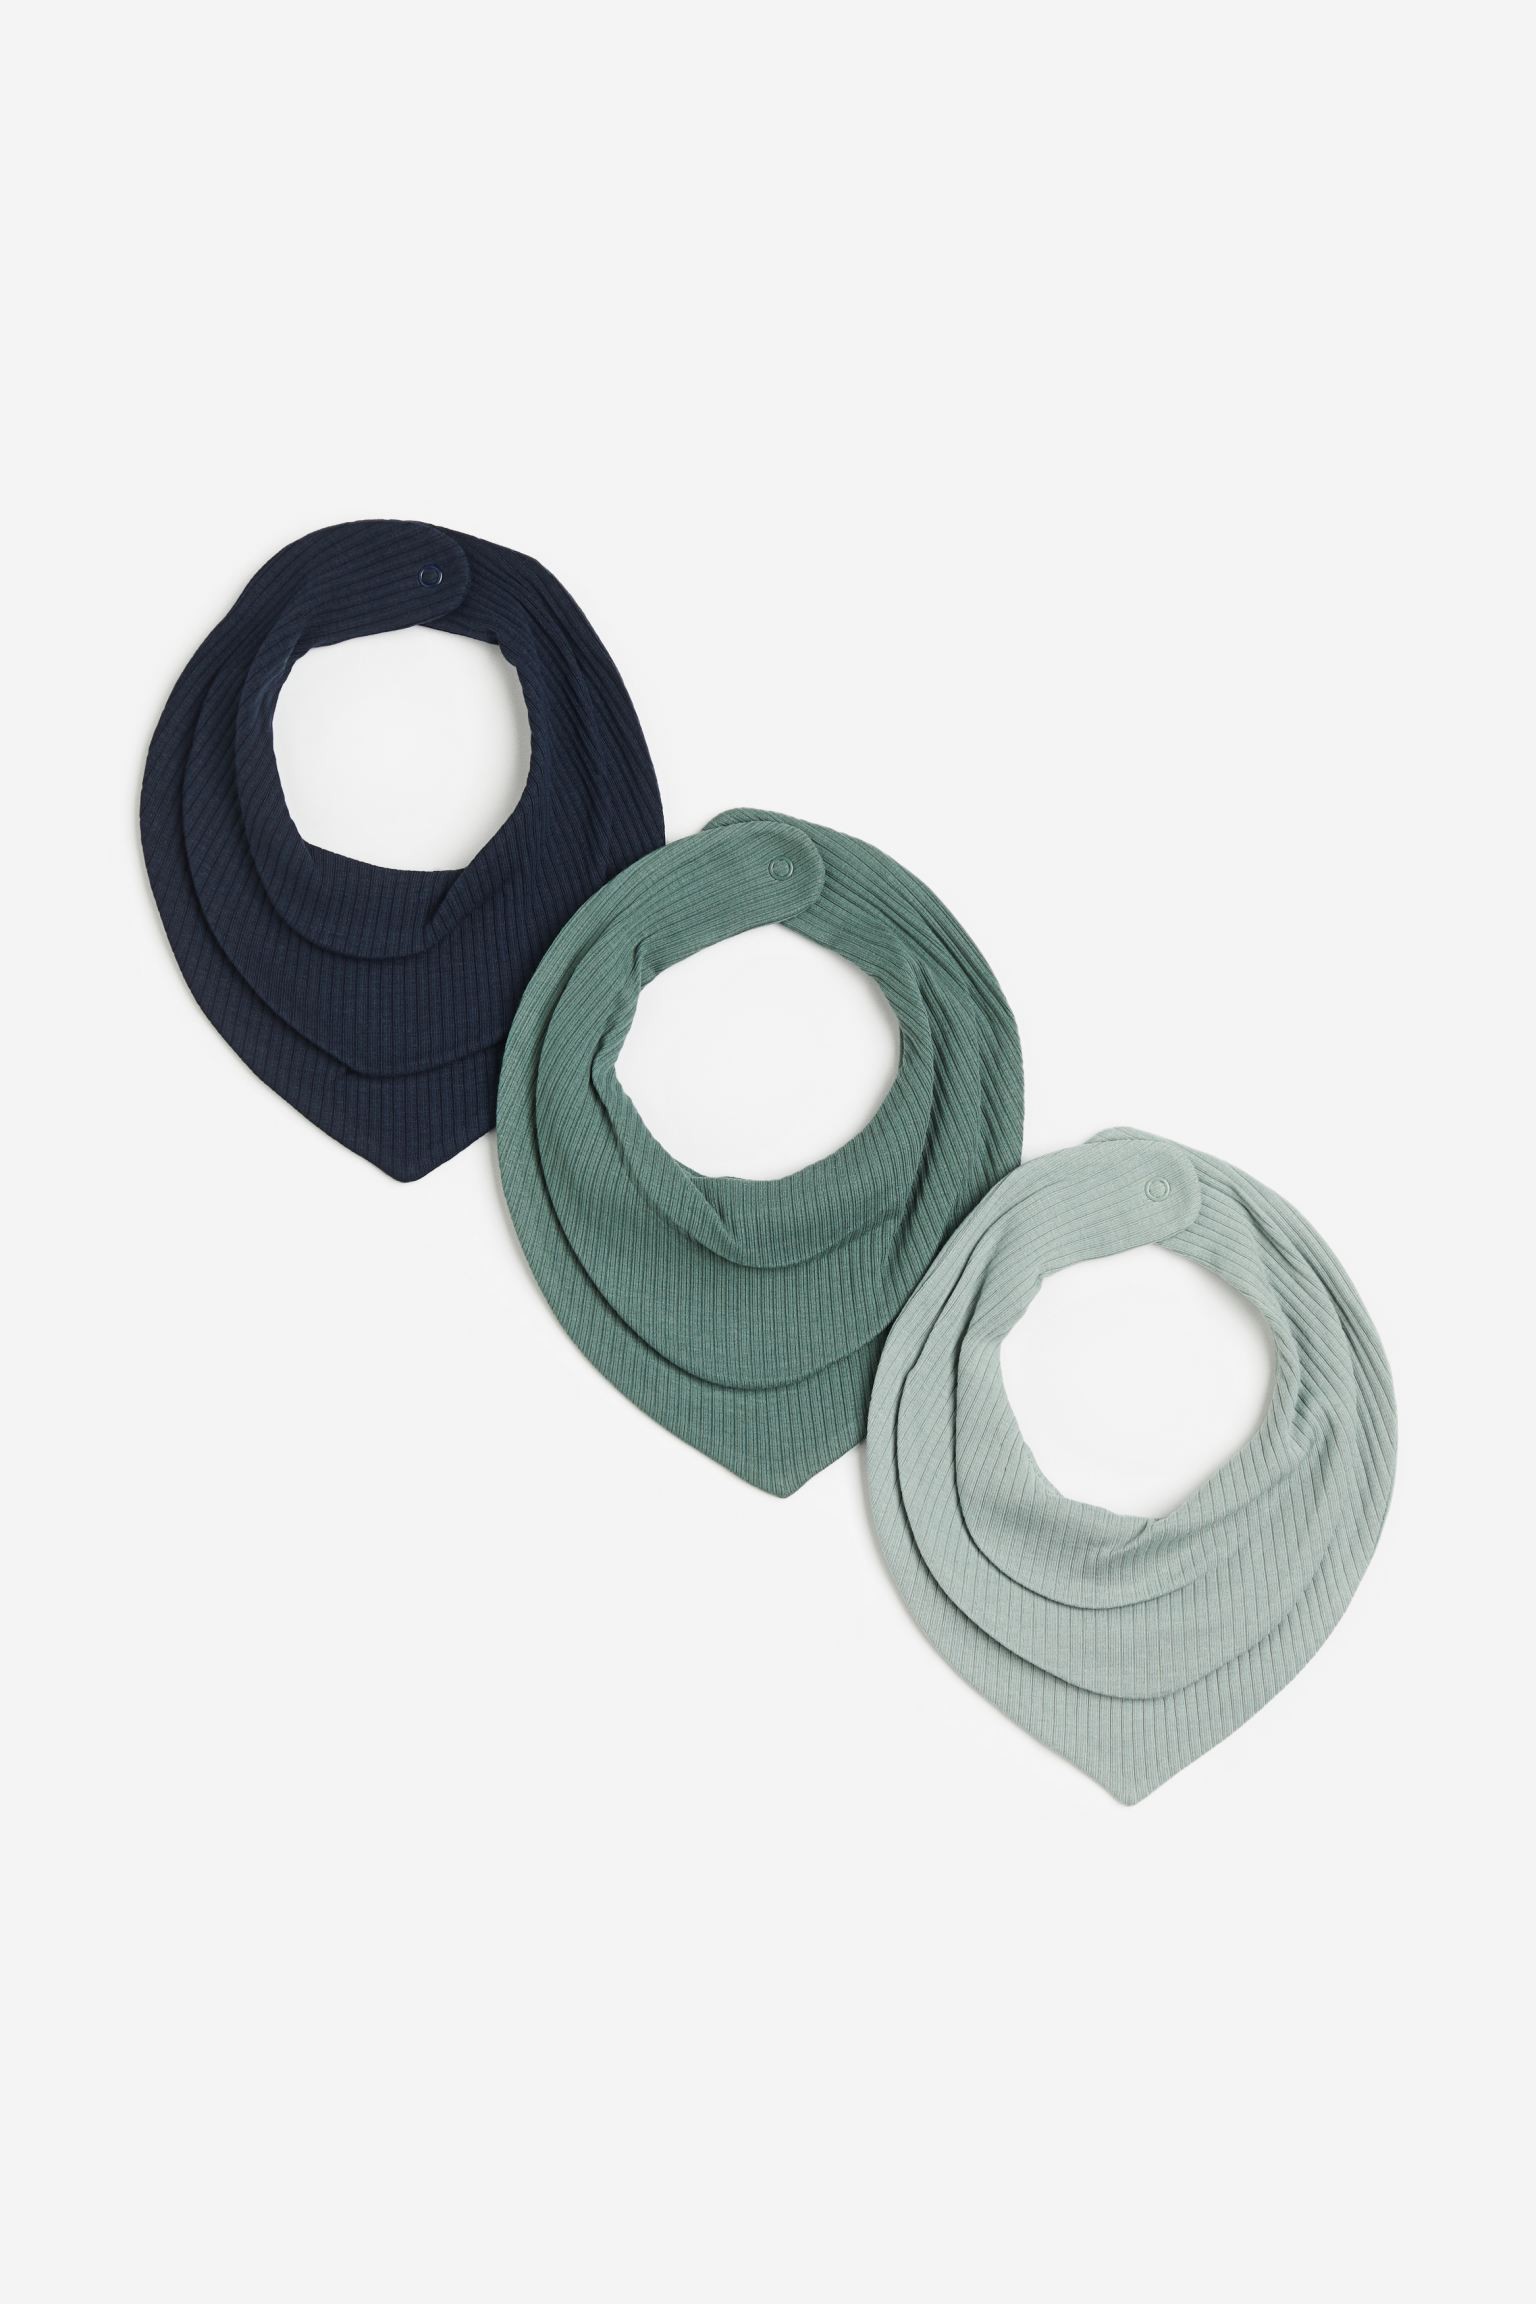 Треугольный шарф в полоски, 3 шт., Темно-синий/Зеленый, 19x19